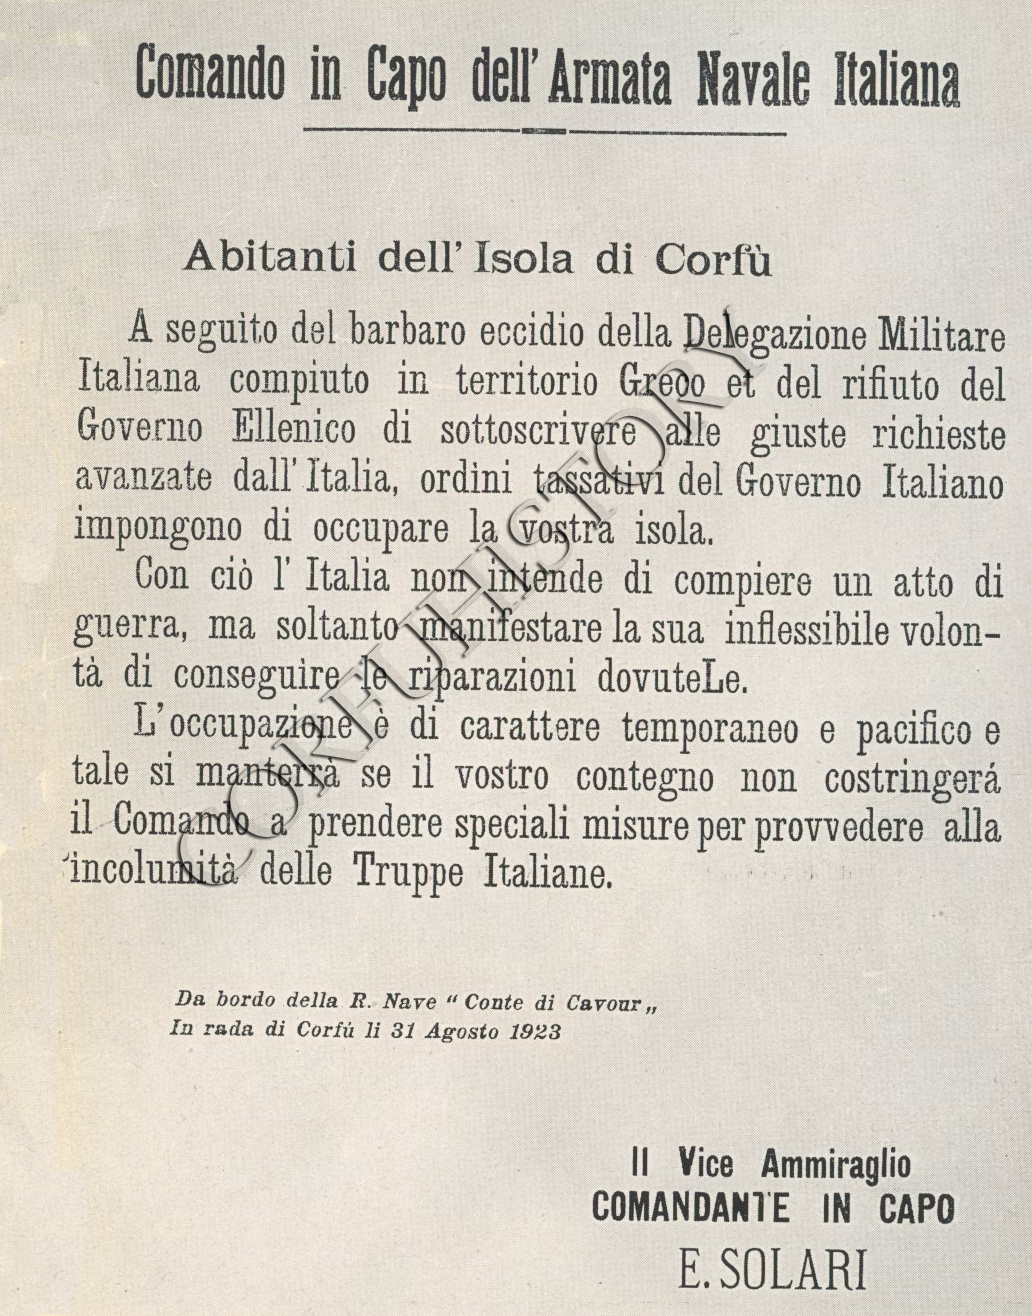 H προκήρυξη του αντιναύαρχου Emilio Solari προς τους Κερκυραίους, αμέσως μετά την ιταλική κατάληψη